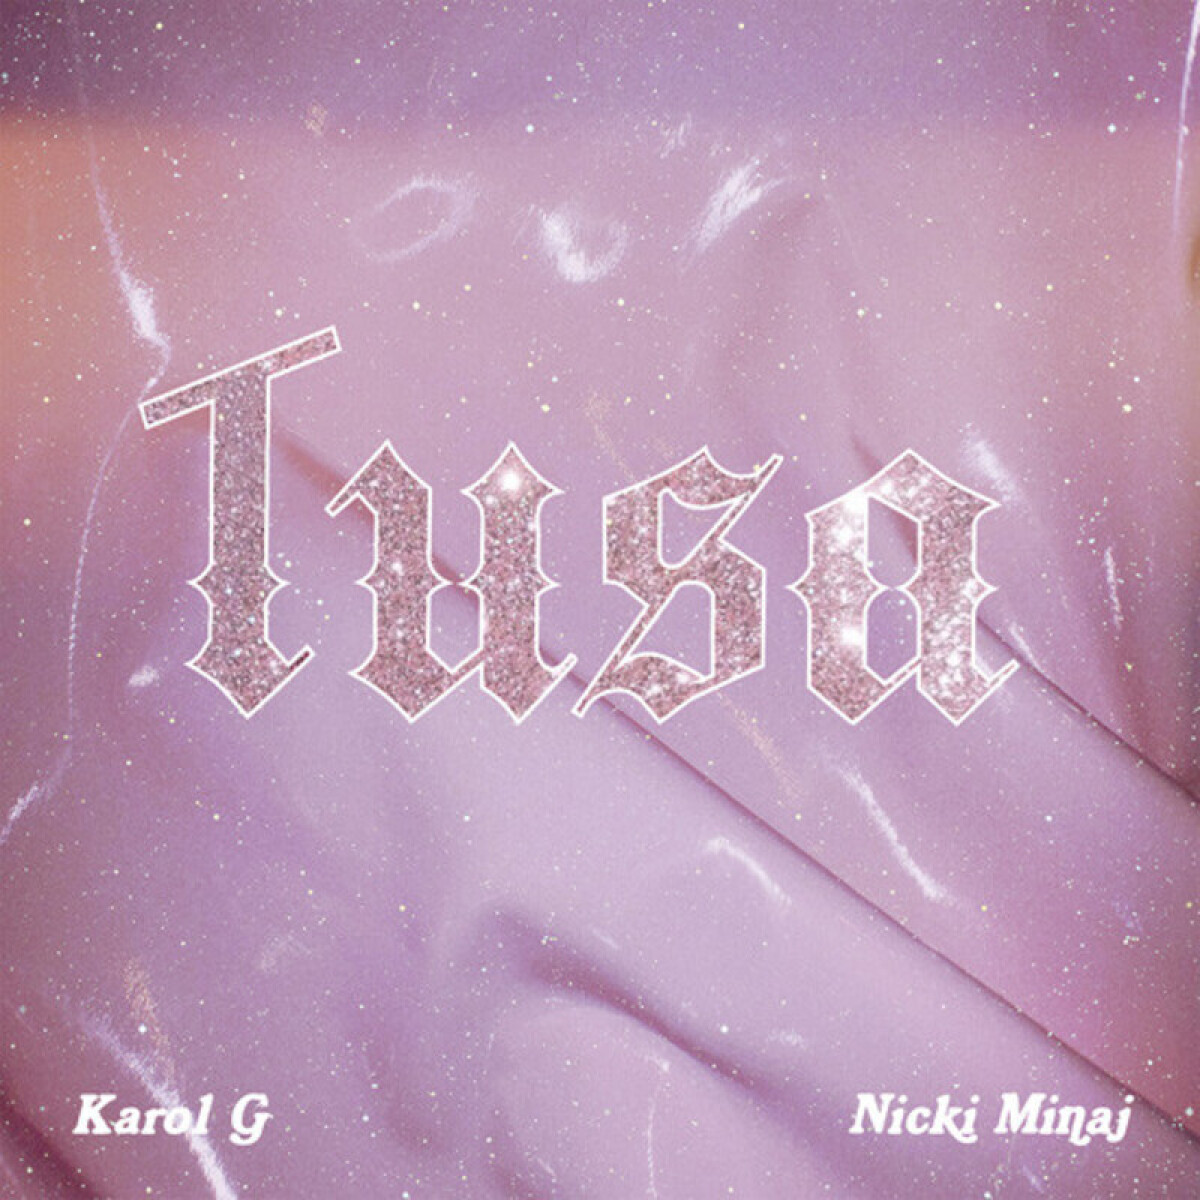 Karol G - Tusa (12 Single Deluxe) - Vinilo 